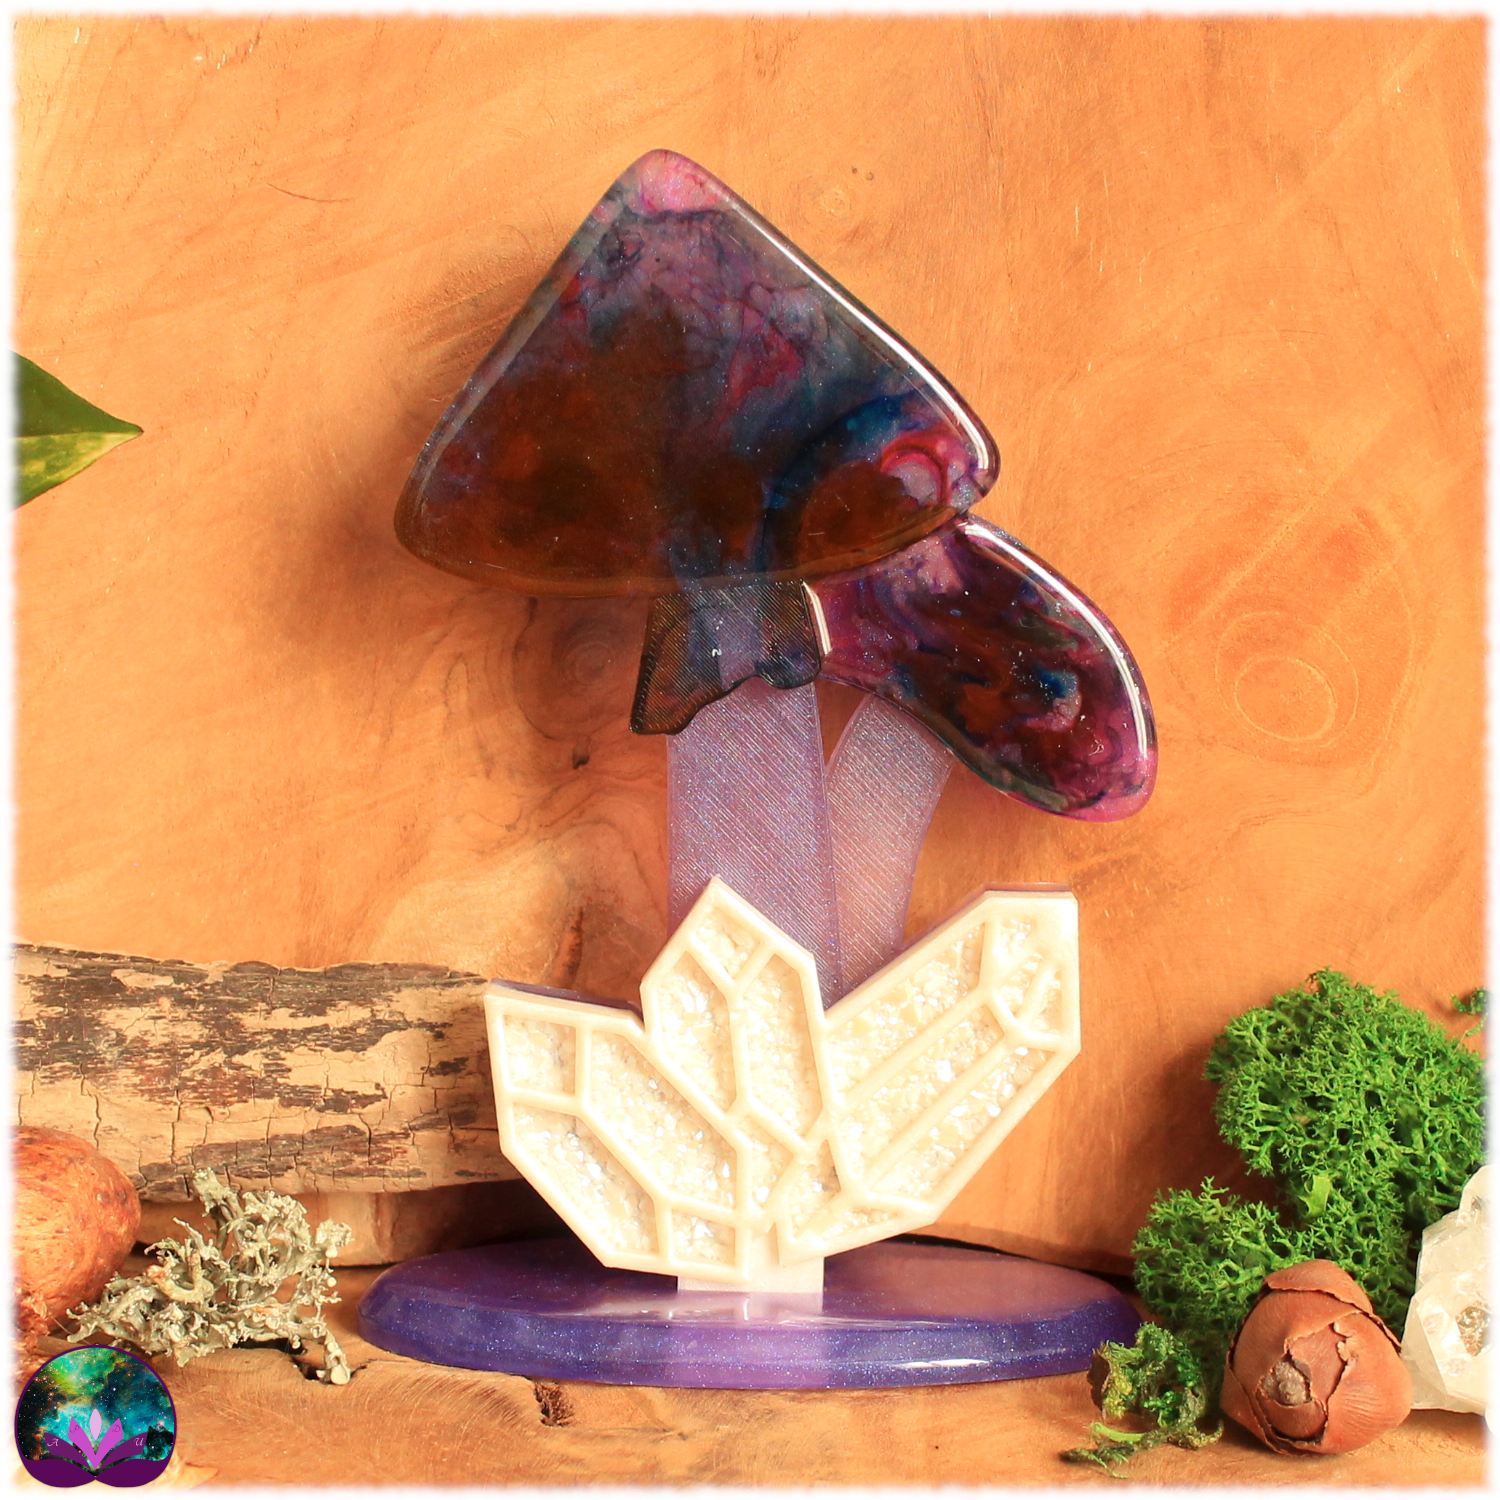 Champignon féerique avec cristaux sur support, pourpre, violet, bleu et blanc